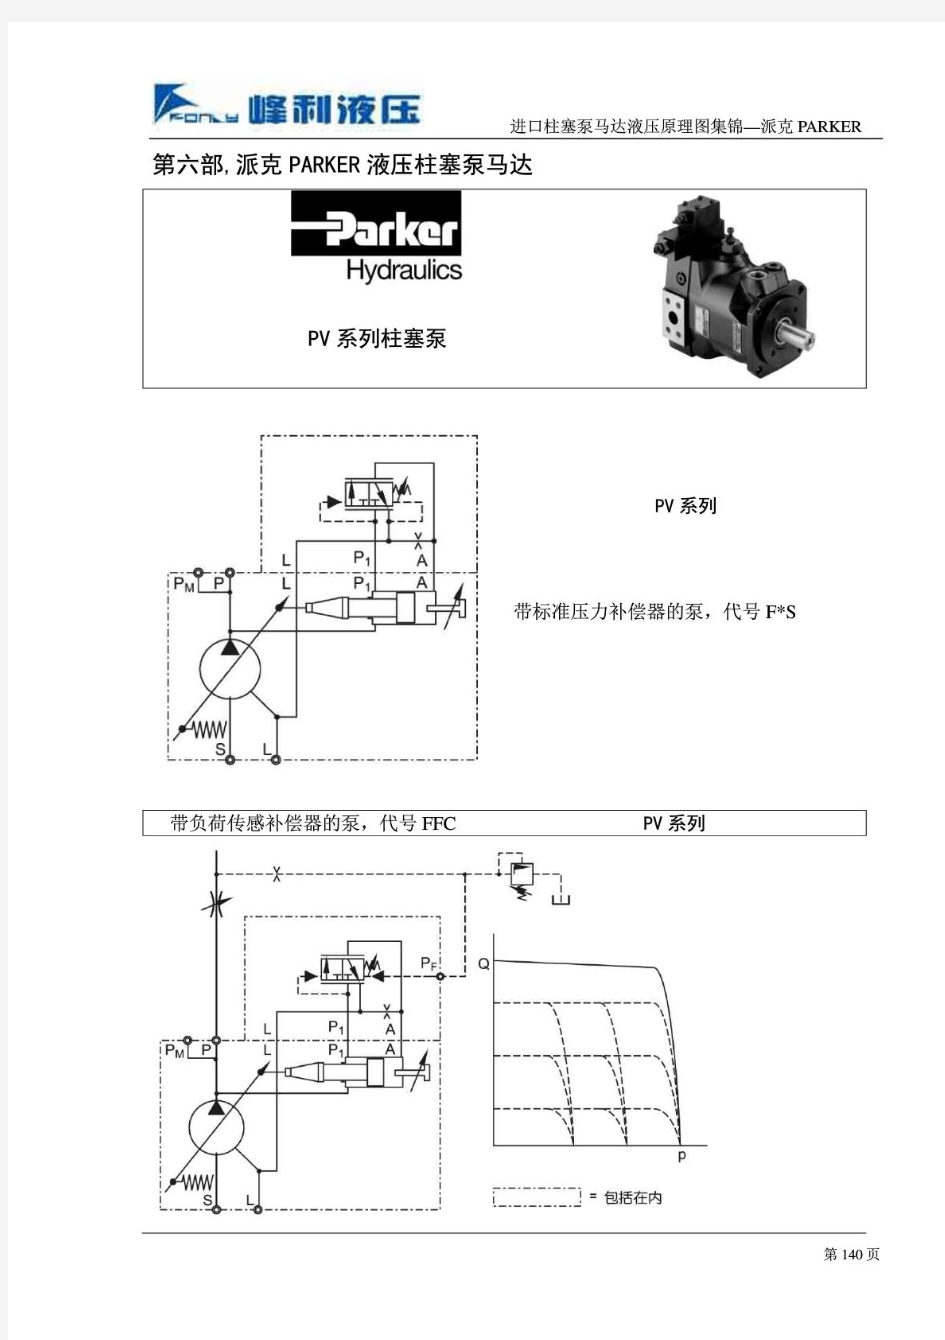 进口柱塞泵马达液压原理图集锦 之6  派克PARKER